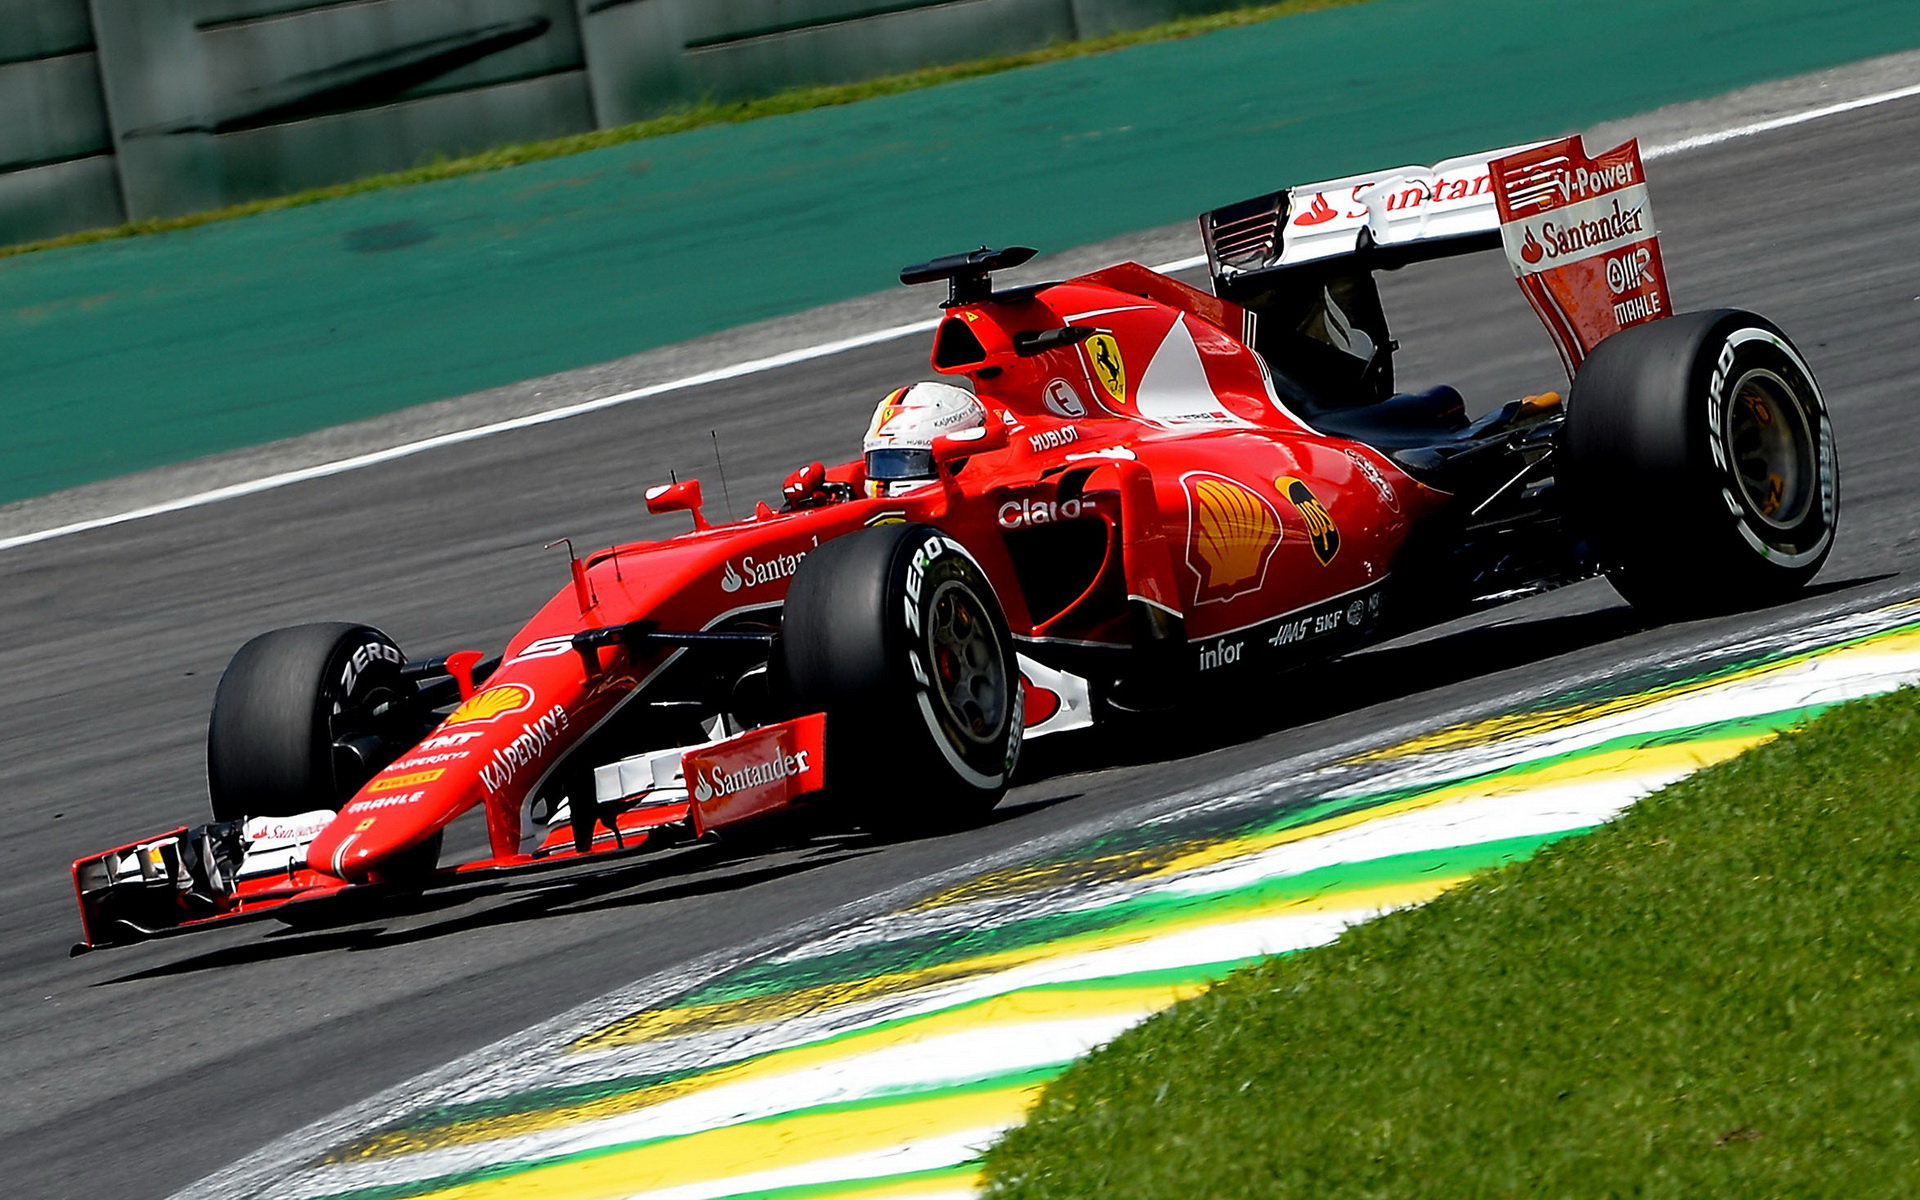 Vettel dojel v Brazílii do cíle jen 6,5 sekundy po Hamiltonovi